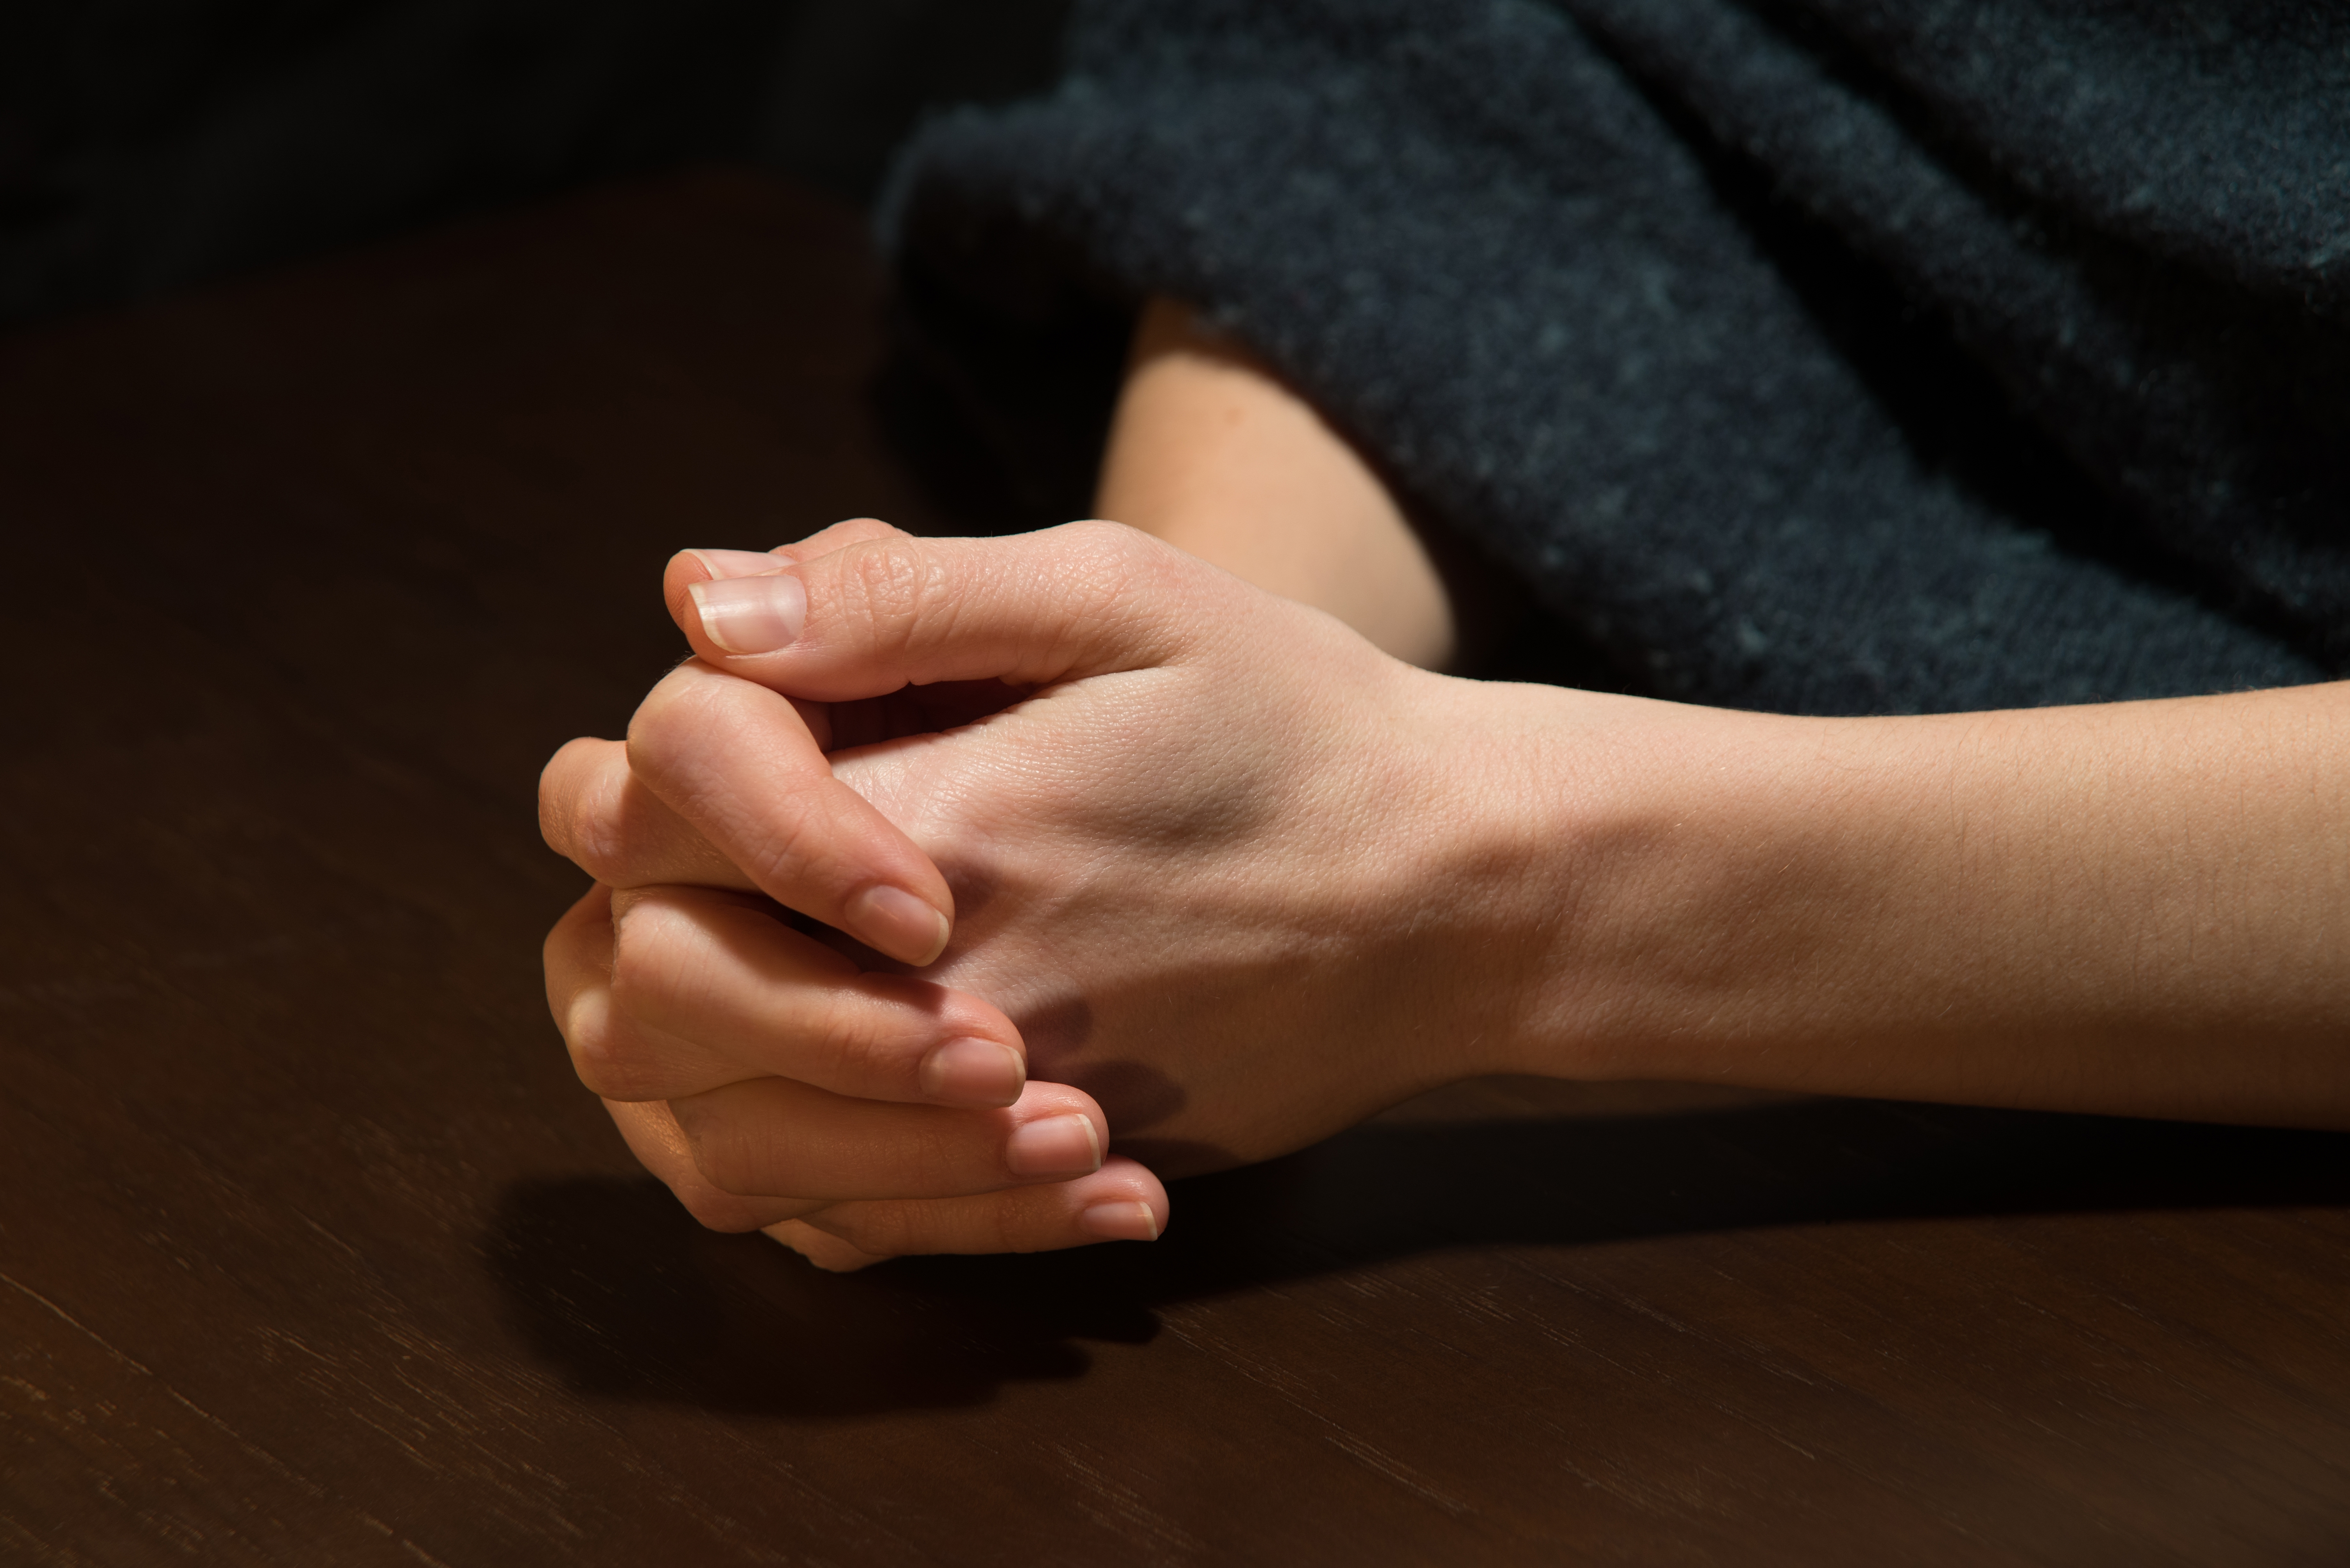 prayer-hands-woman-shutterstock_2188707231.jpg